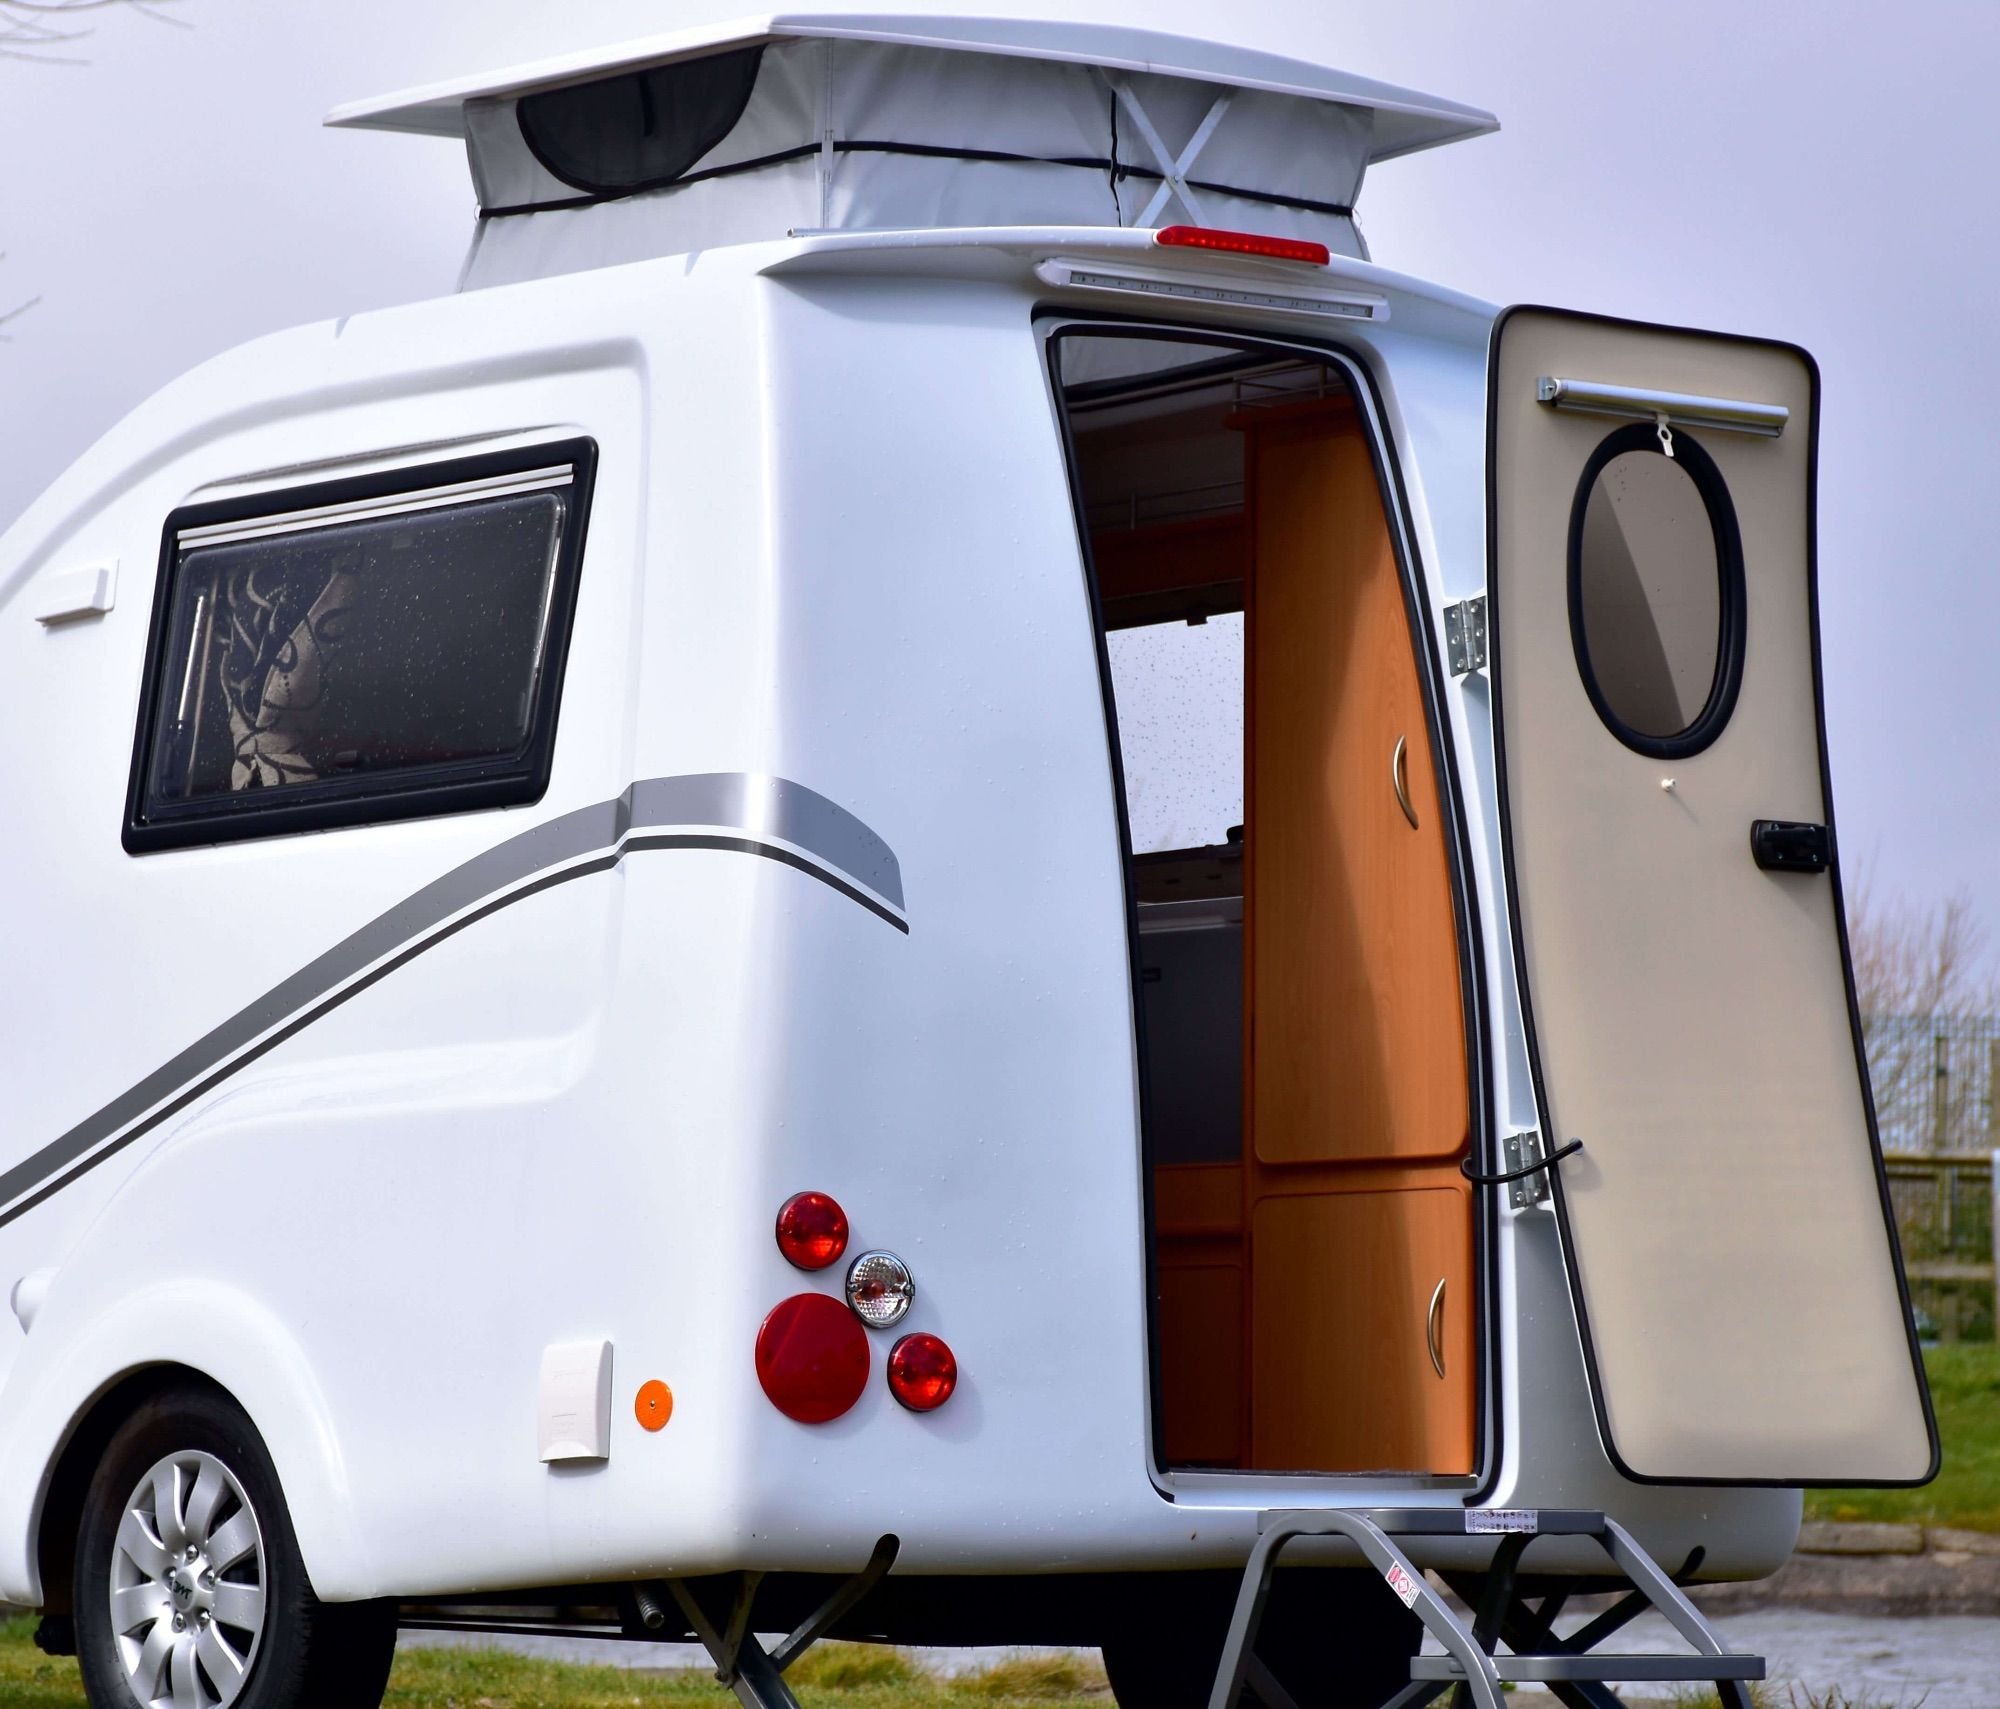 Караваны кемперы. Мини Караван мини кемпер. Микро кемпер автодом. Micro Camper van. Go pods - Micro Tourer Caravans.